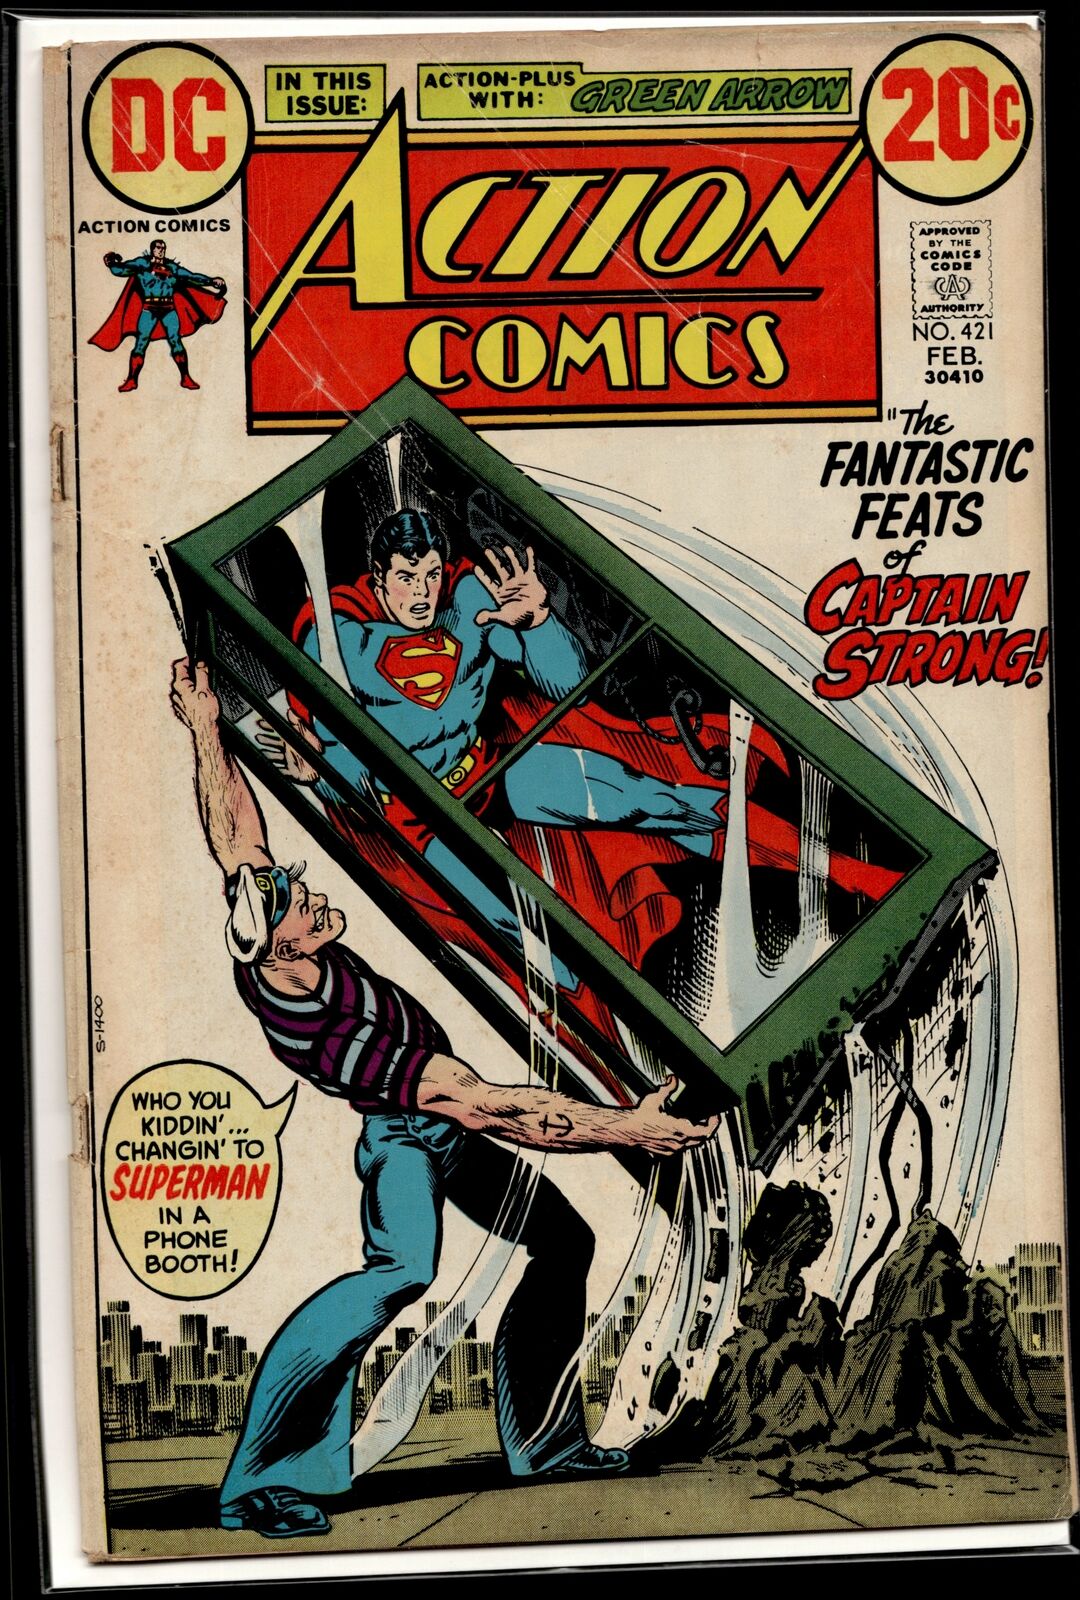 1973 Action Comics #421 1st Captain Strong DC Comic